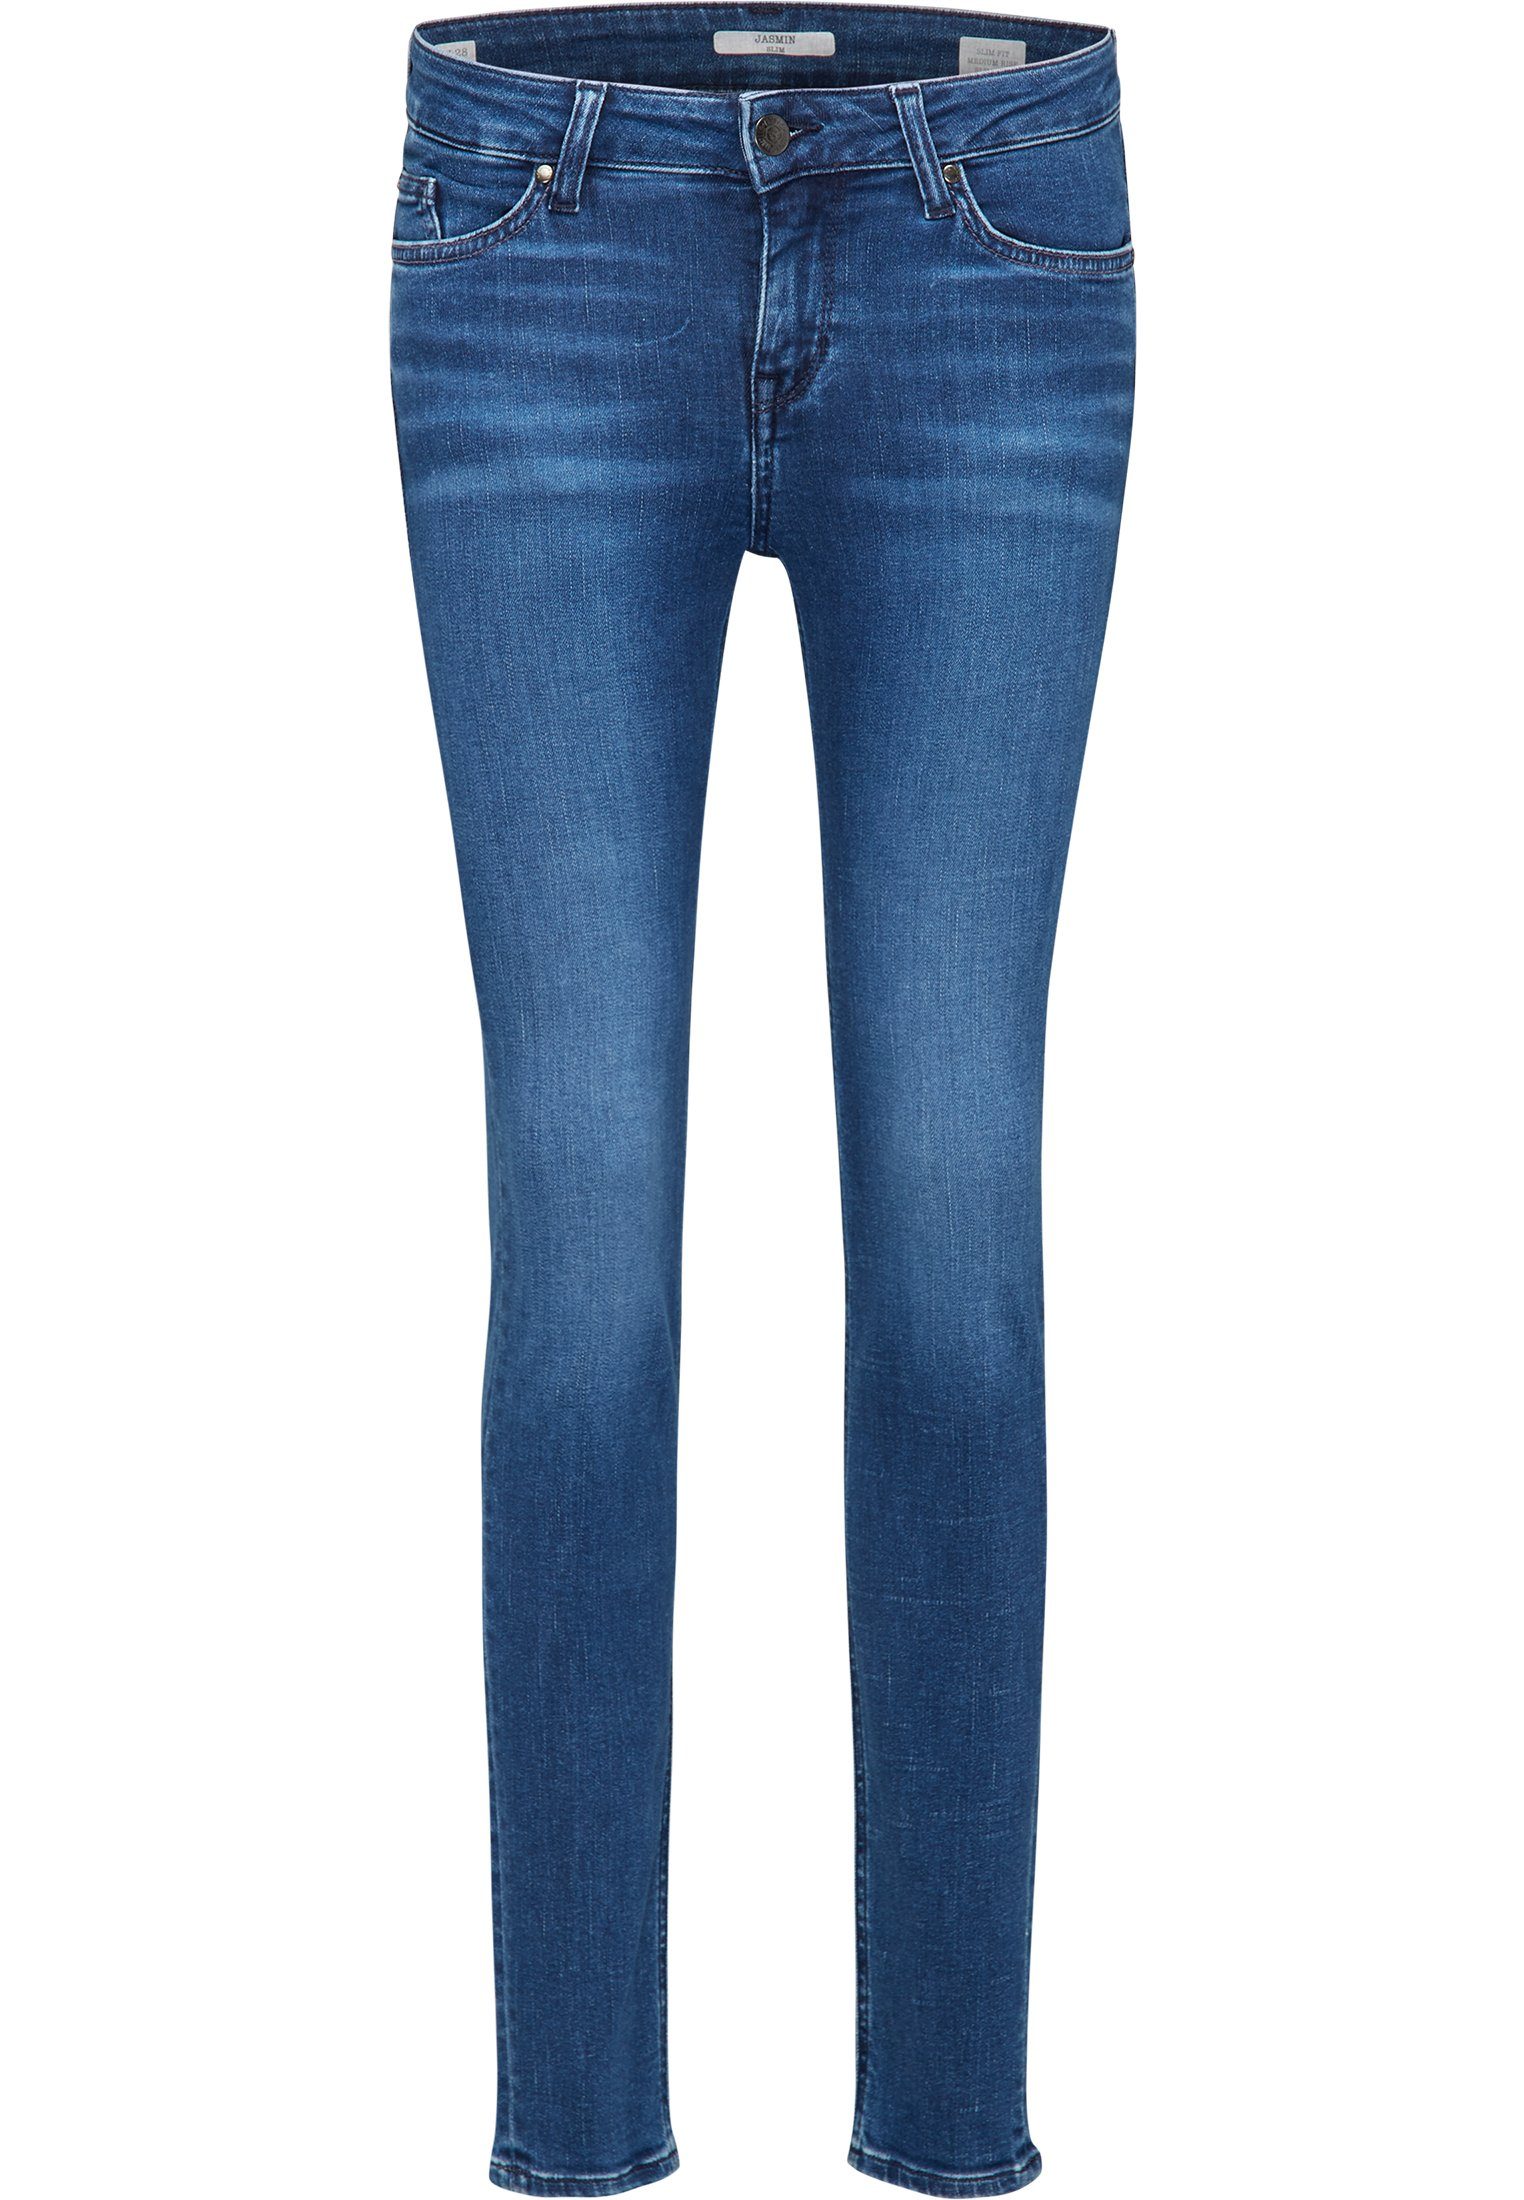 MUSTANG Slim-fit-Jeans Jasmin Jeggins, Slim fit, Denim Blue-Medium Middle  5-Pocket